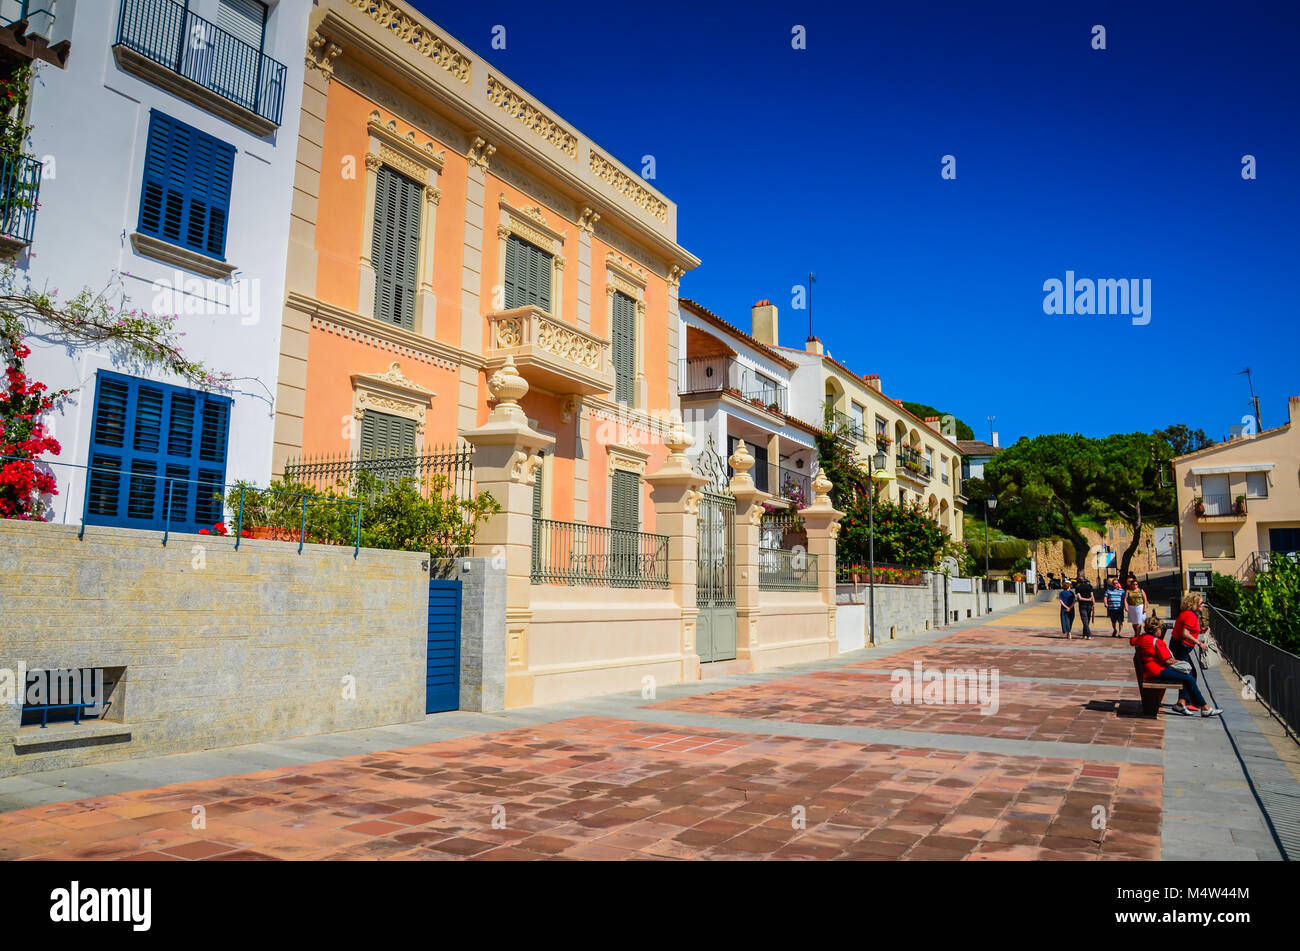 Cielo blu, architettura barocca e fiori mediterranea sulla strada della citta'. Foto Stock